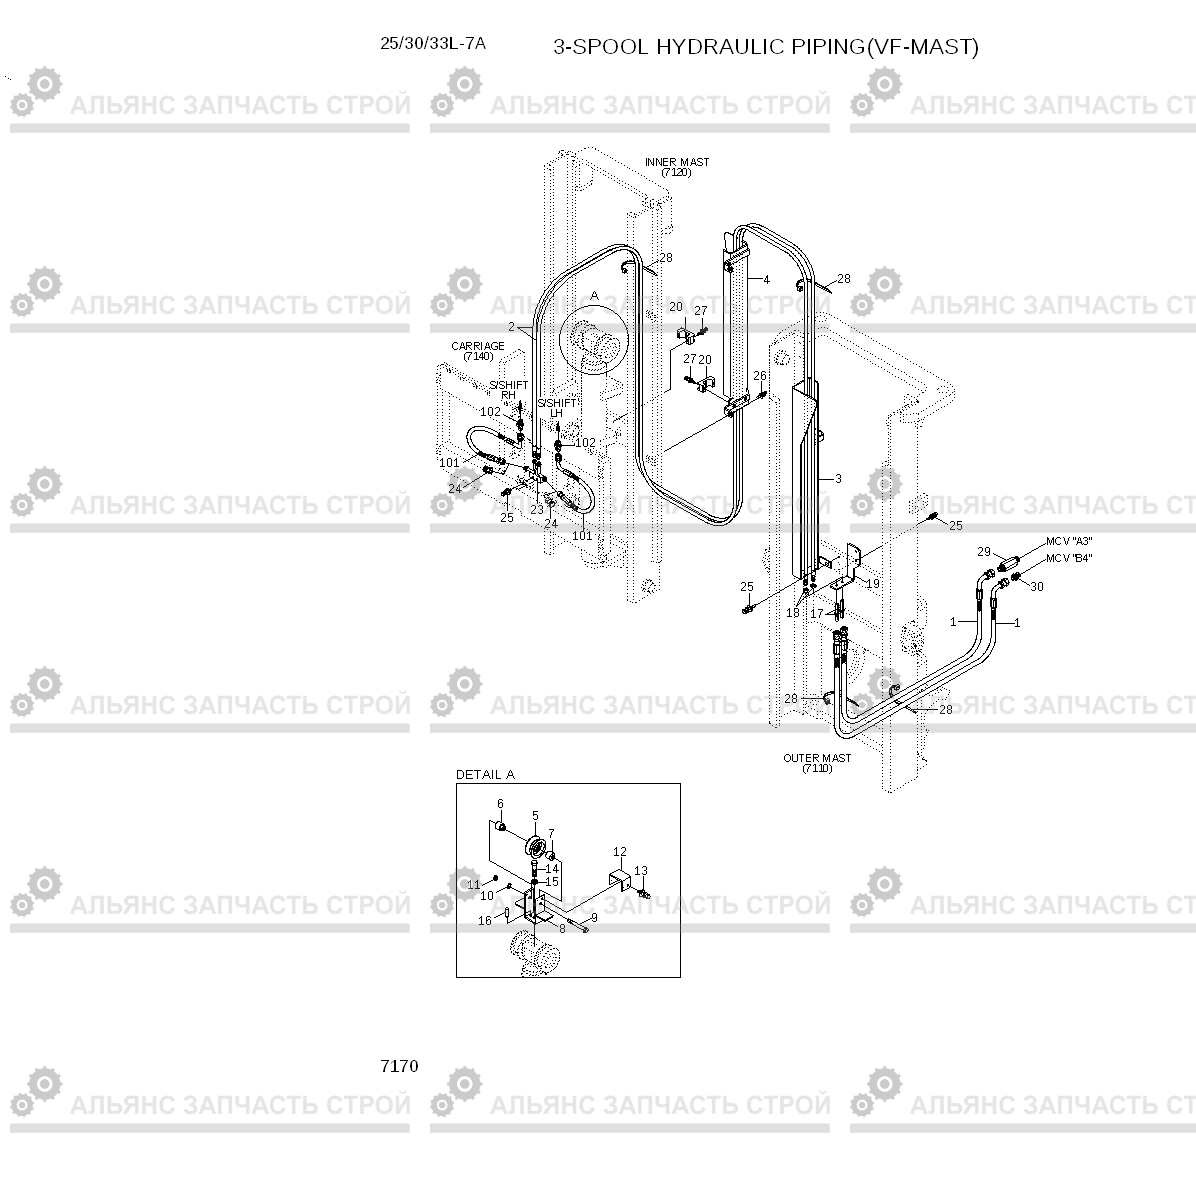 7170 3-SPOOL HYD PIPING (VF-MAST) 25/30/33L-7A, Hyundai